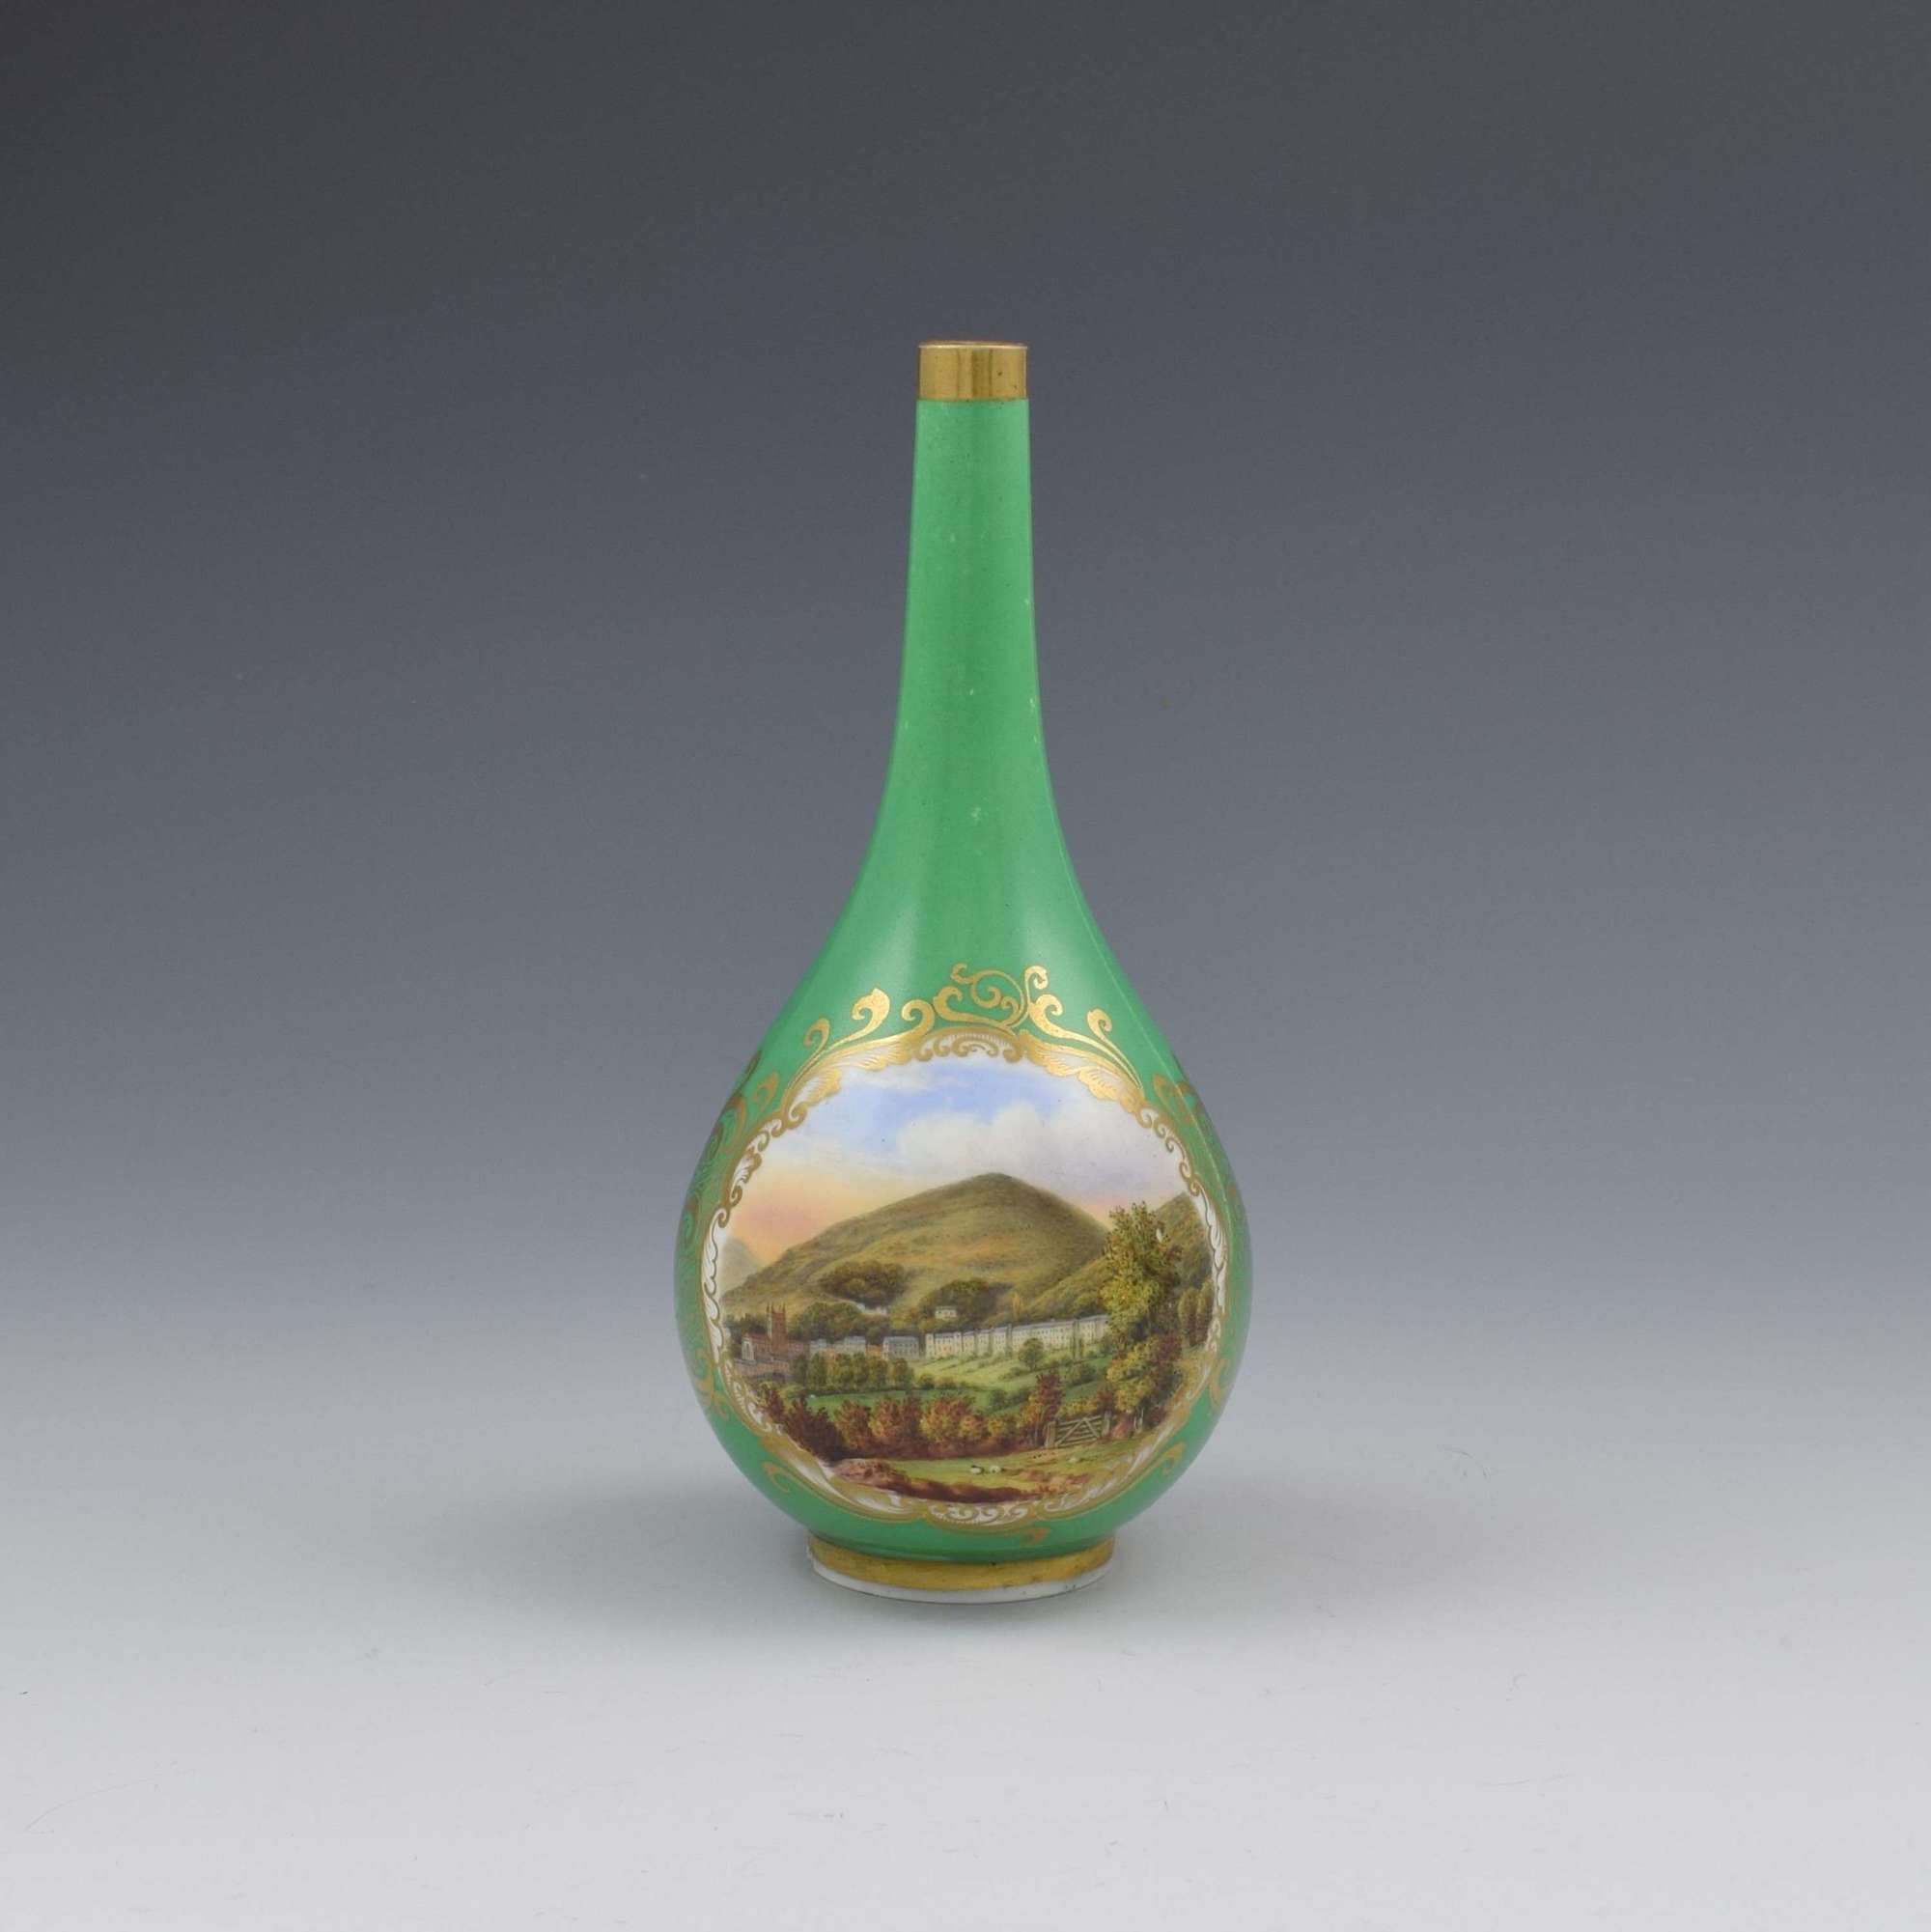 Chamberlain's Worcester Porcelain Bottle Vase View Of Malvern